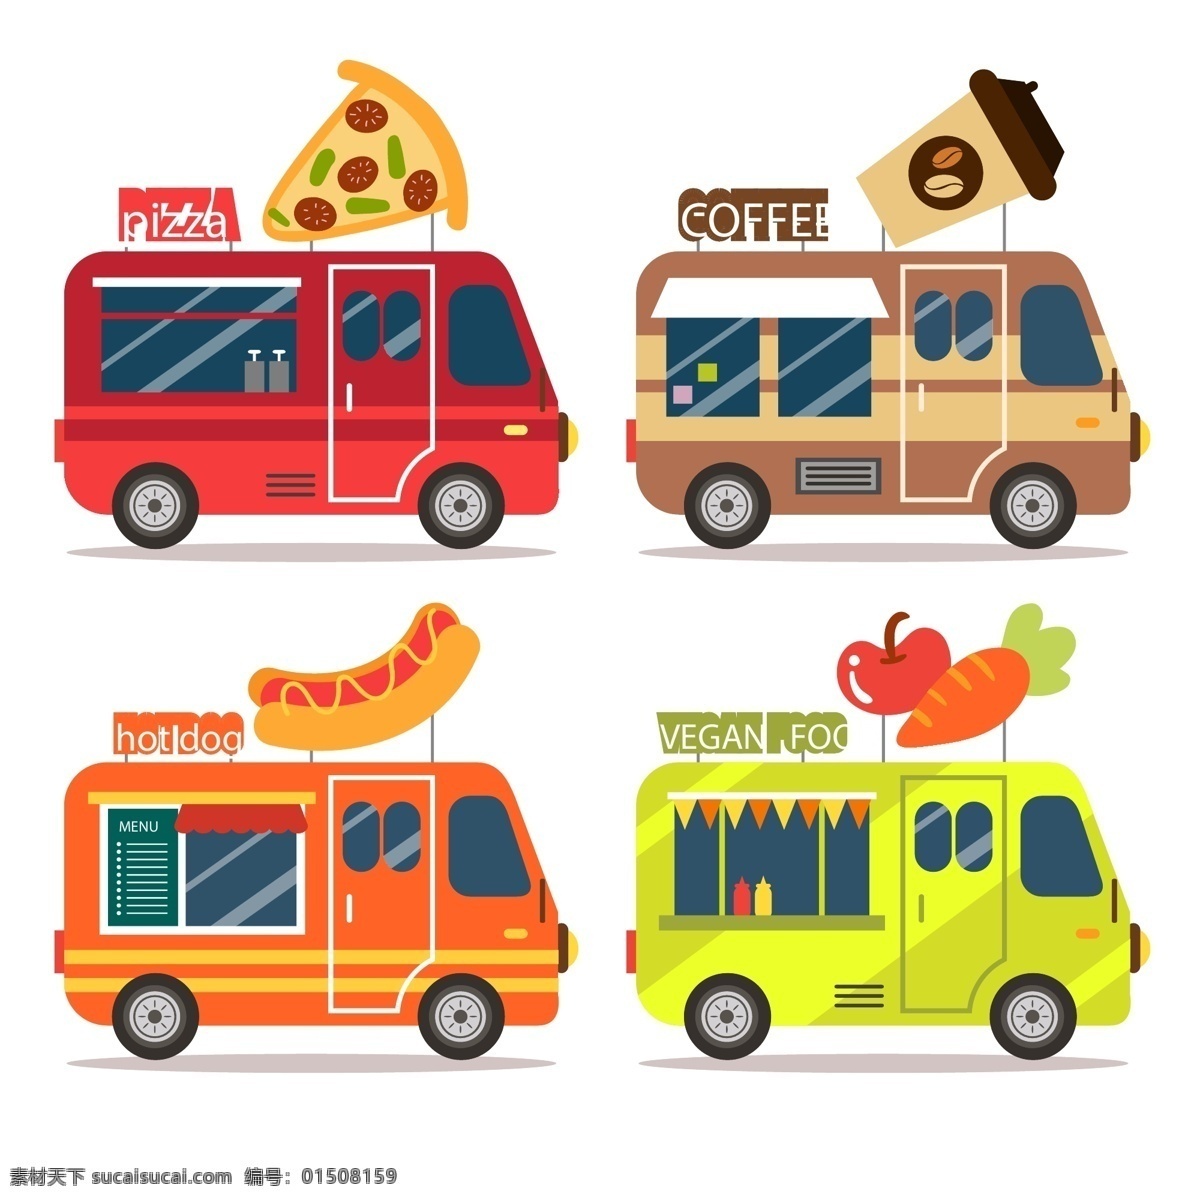 创意 食品 卡车 系列 美食 食物 披萨 餐车 热狗 咖啡